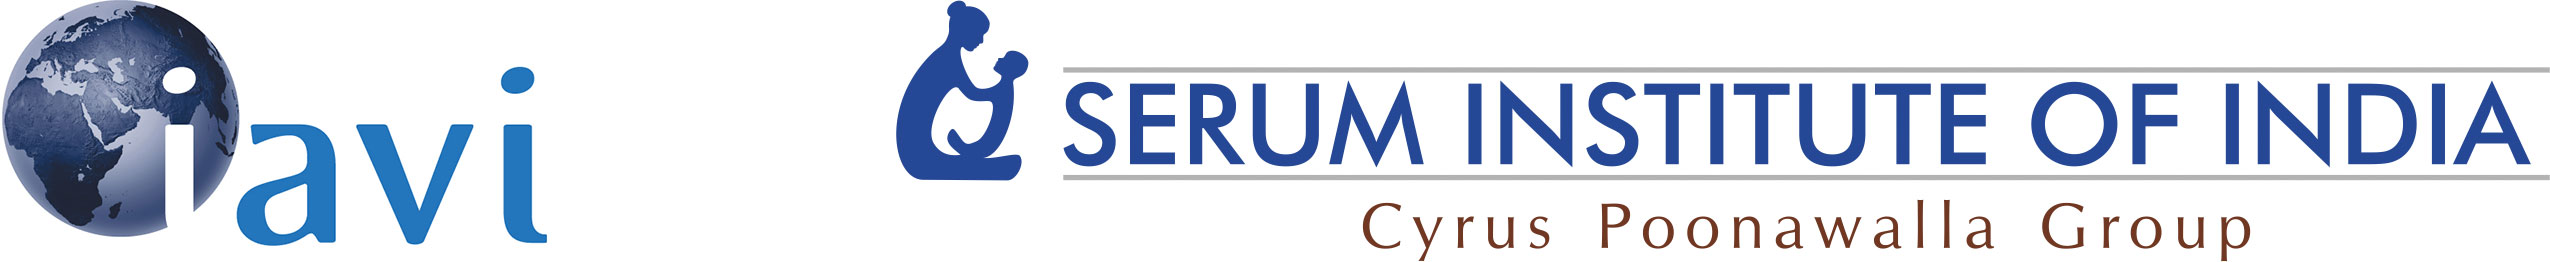 IAVI Serum logos